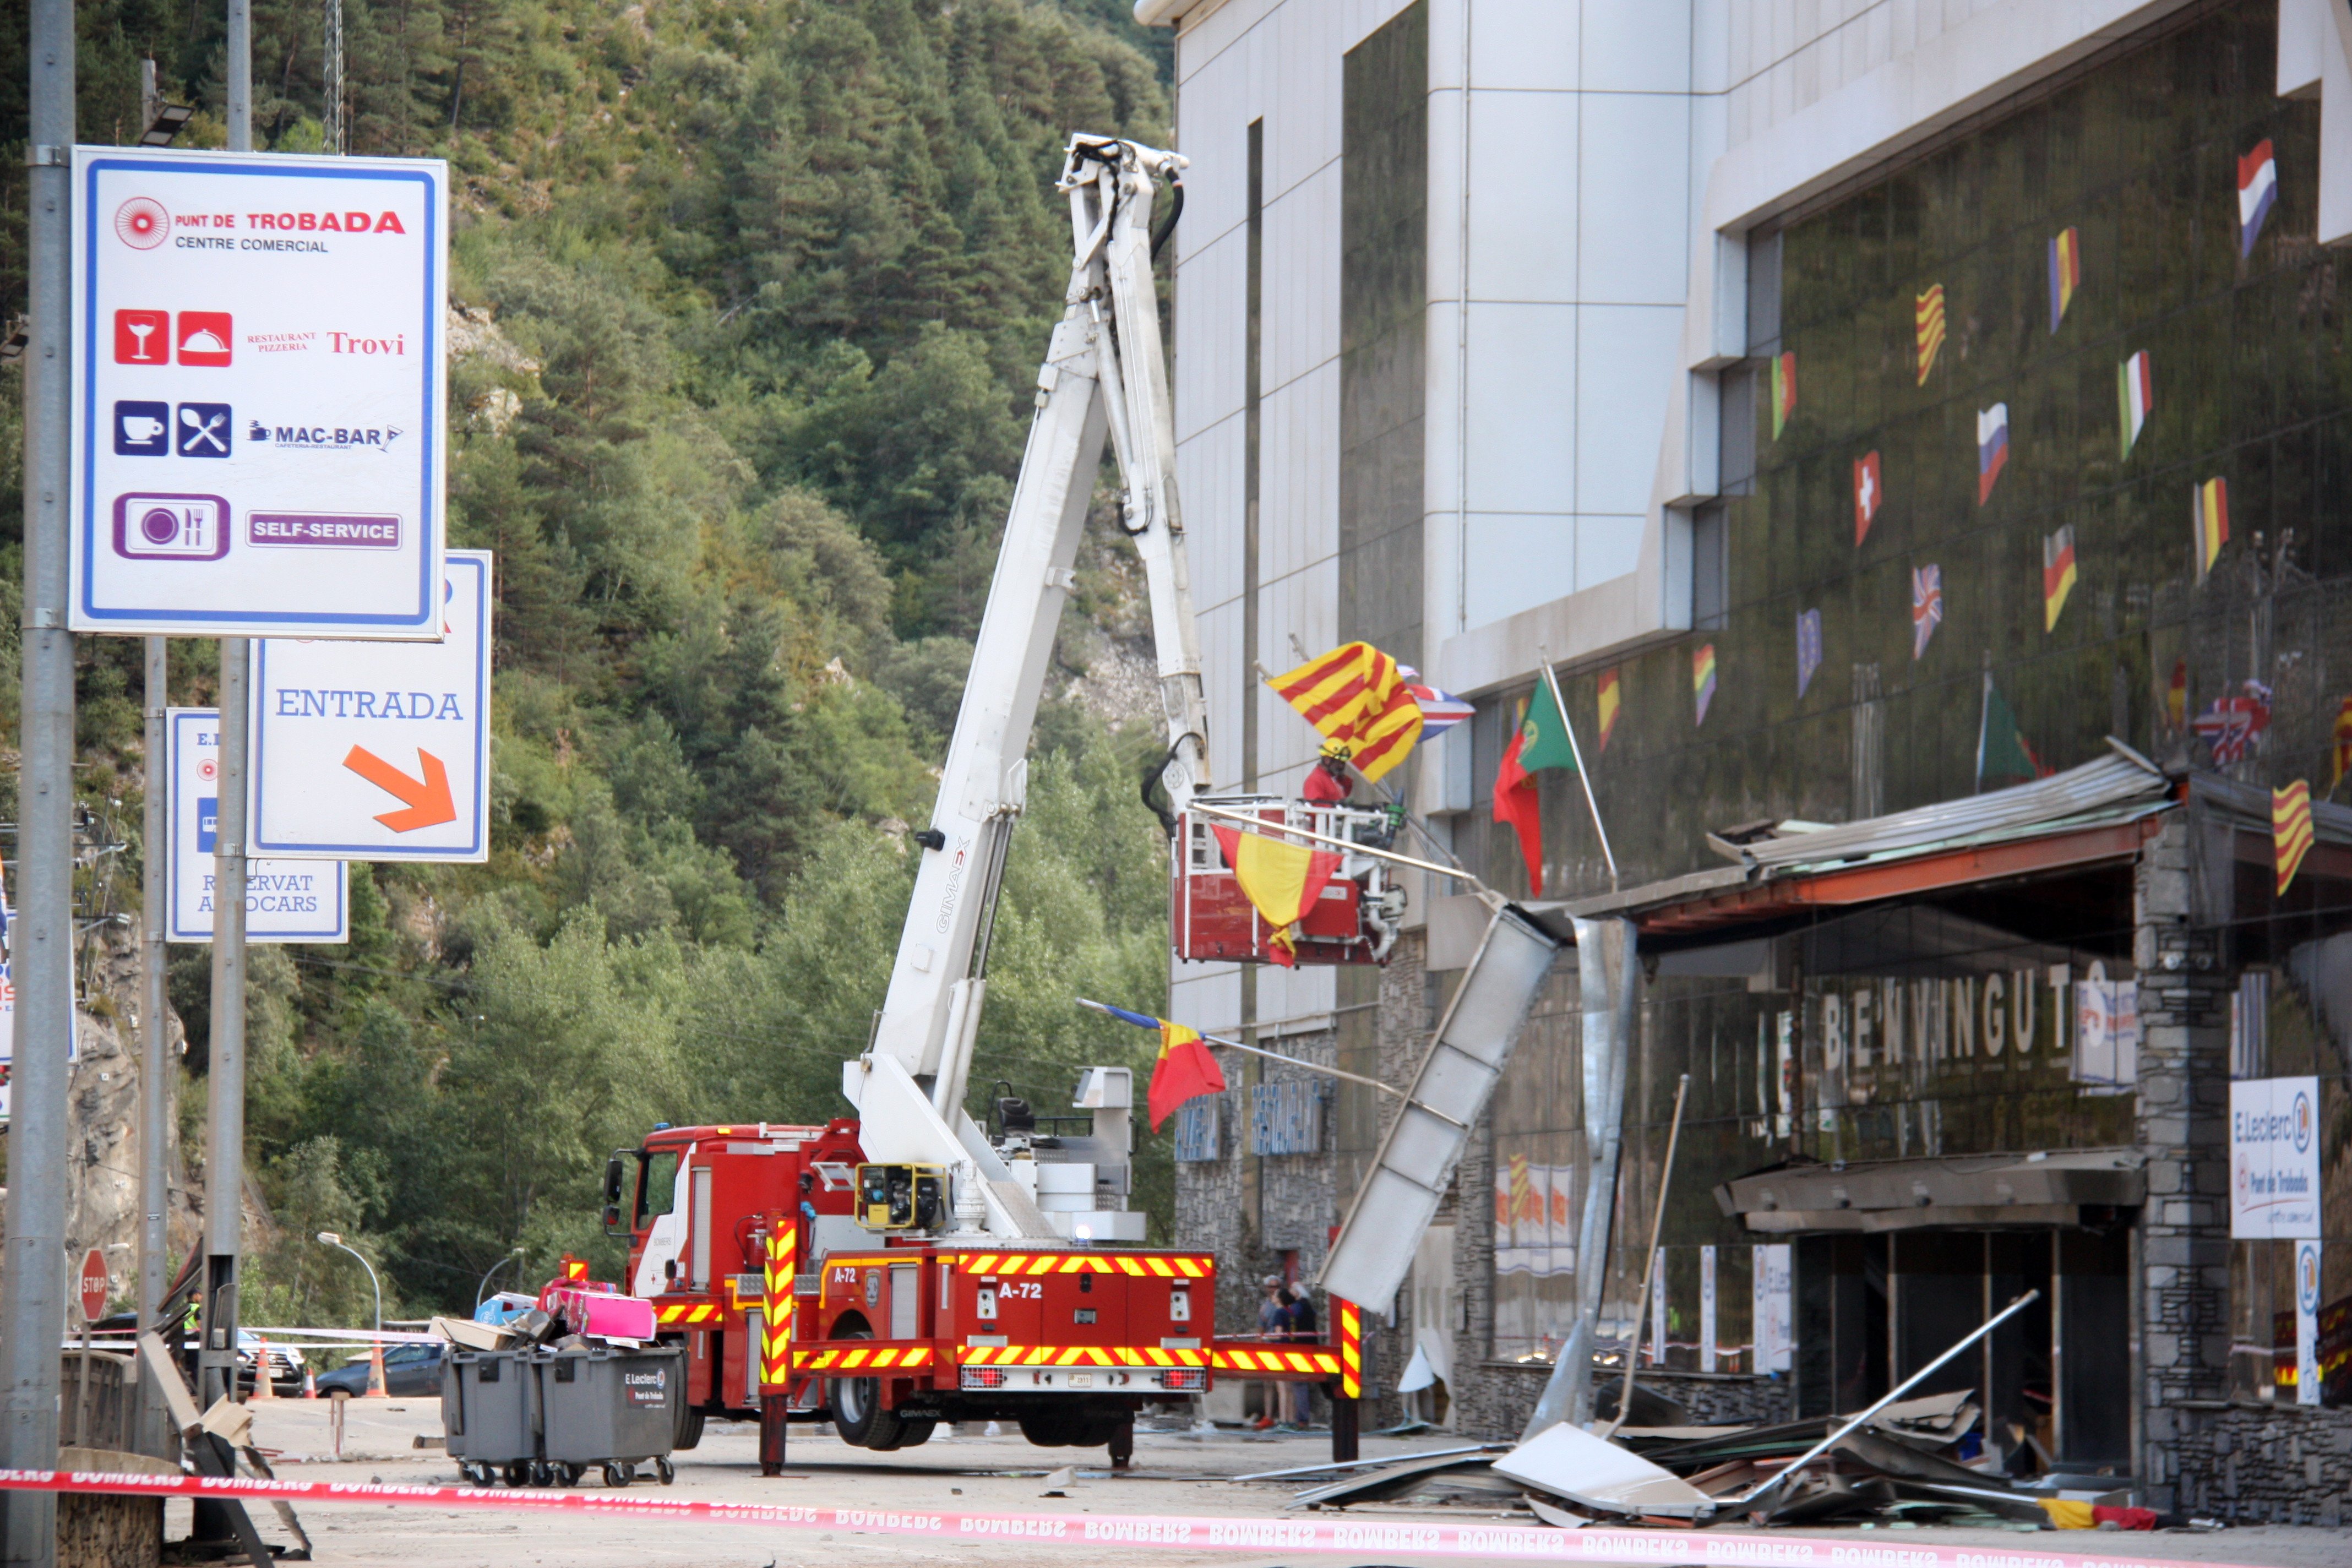 Camions i autobusos ja poden entrar a Andorra per l'Alt Urgell